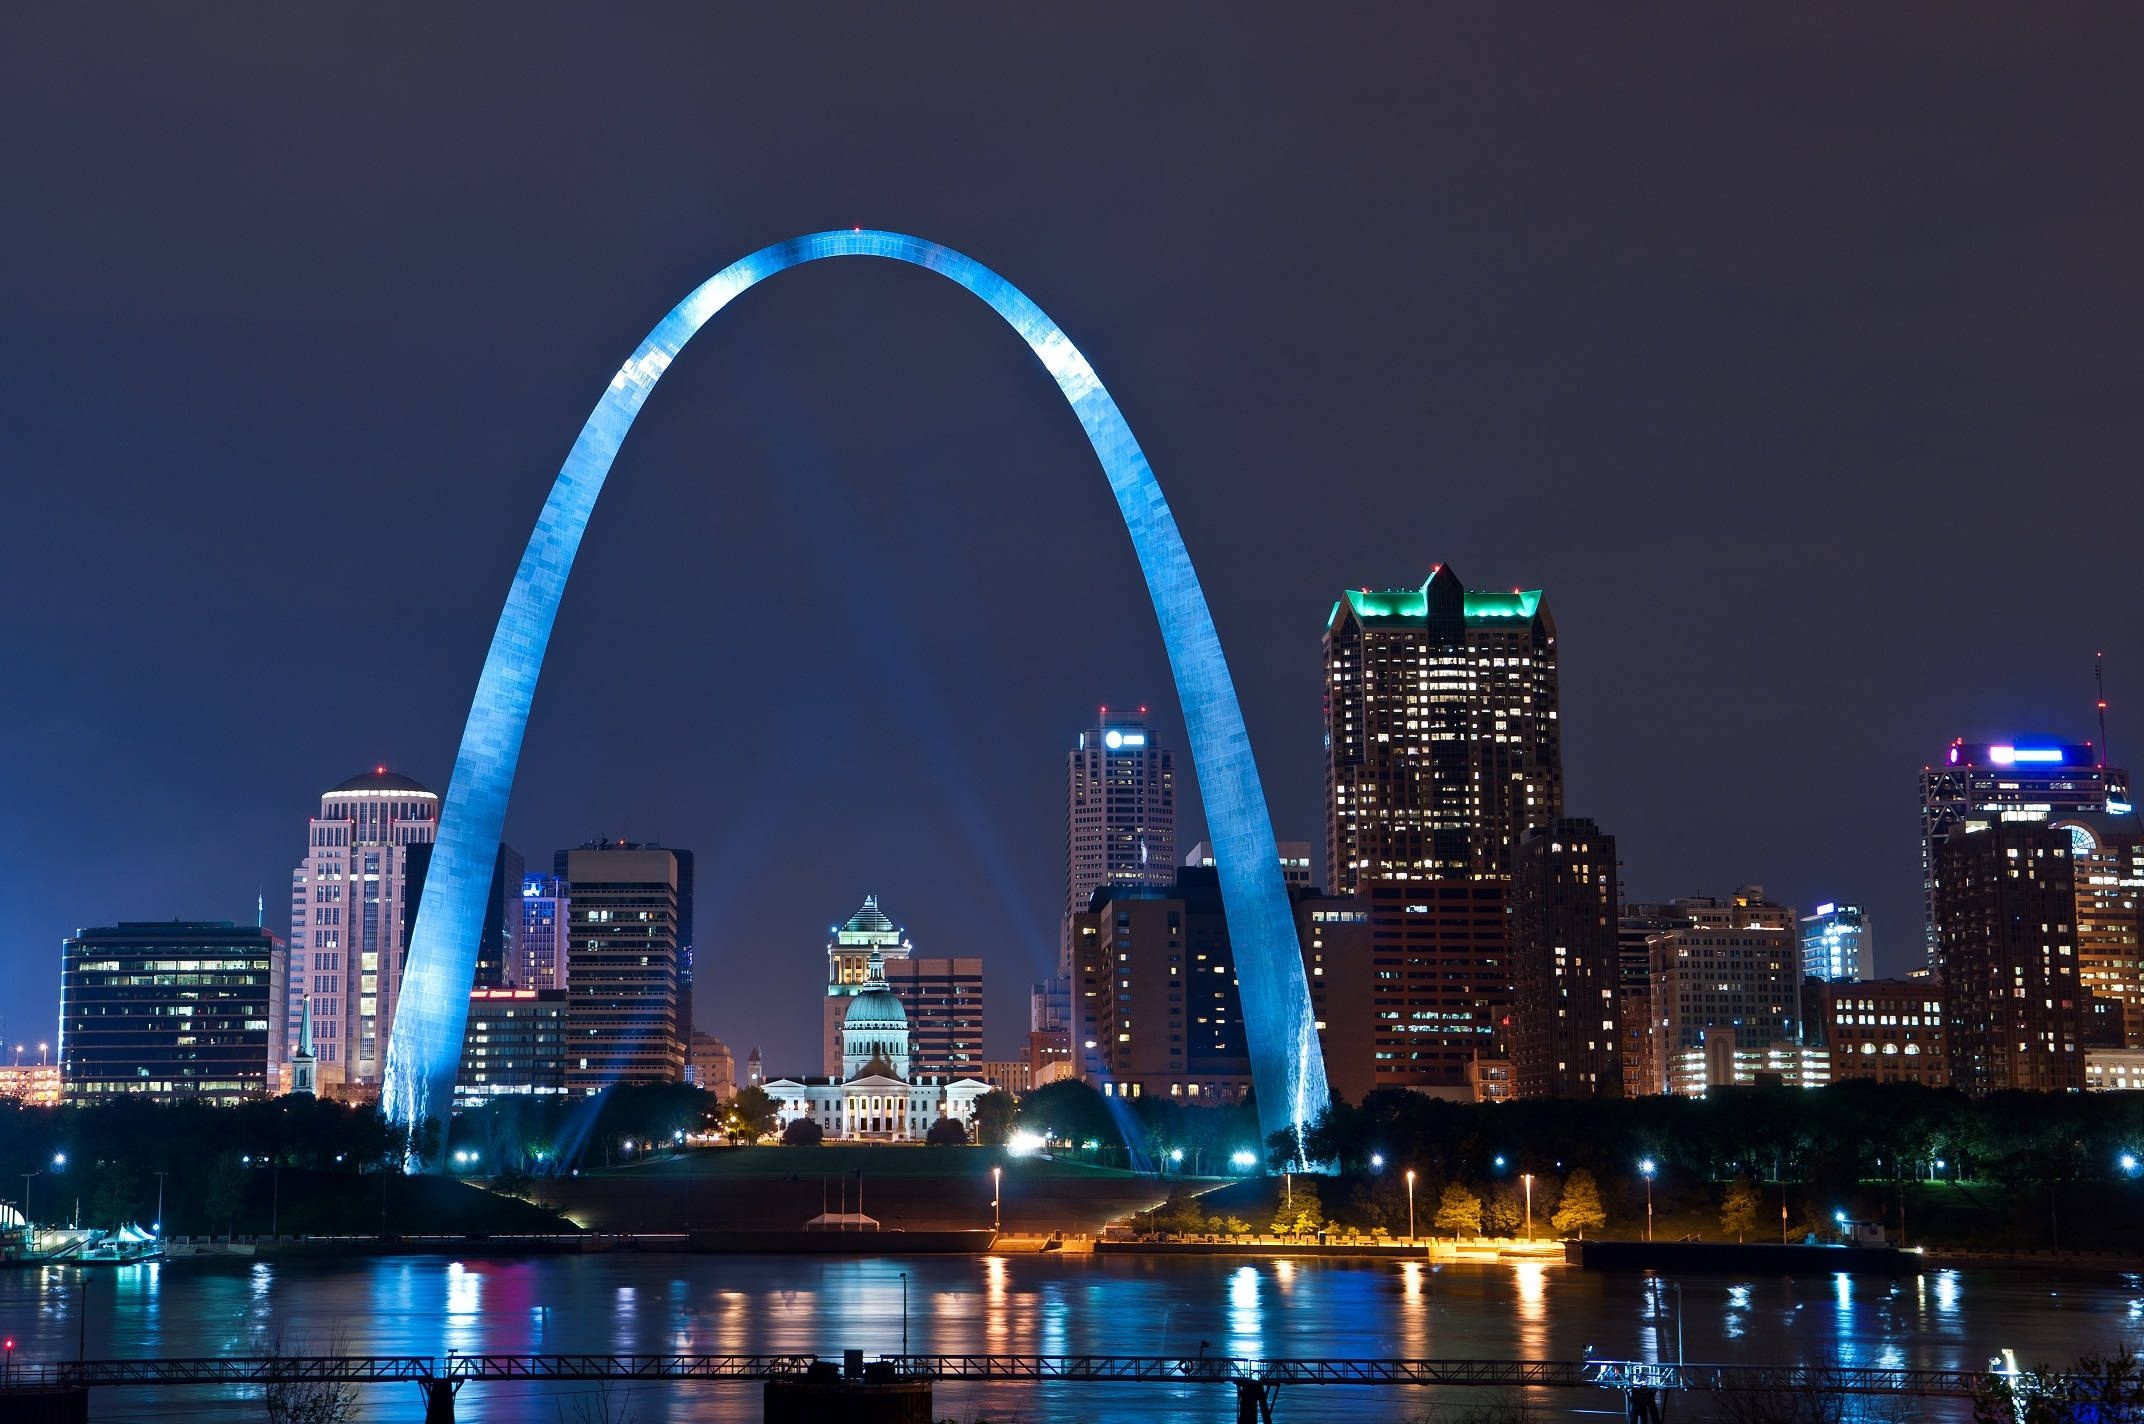 St. Louis travels, Stl backgrounds, Cityscape views, Architectural marvels, 2150x1430 HD Desktop